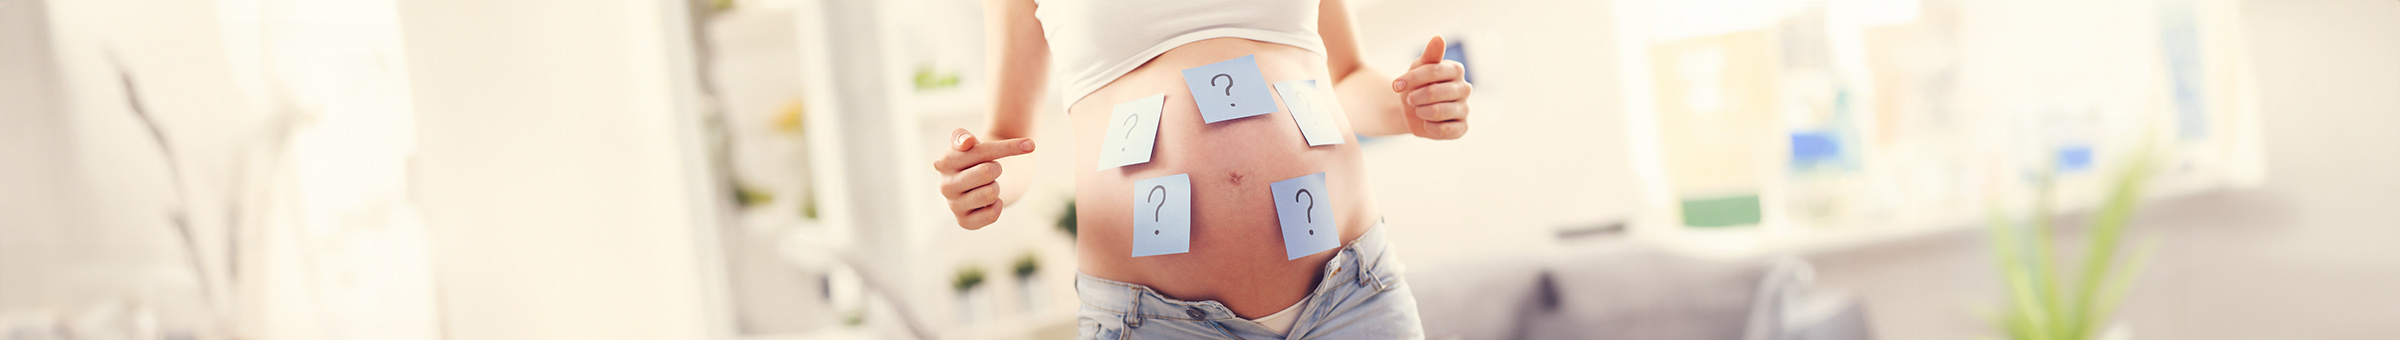 Foto von einer schwangeren Frau mit Fragezeichen auf dem Bauch